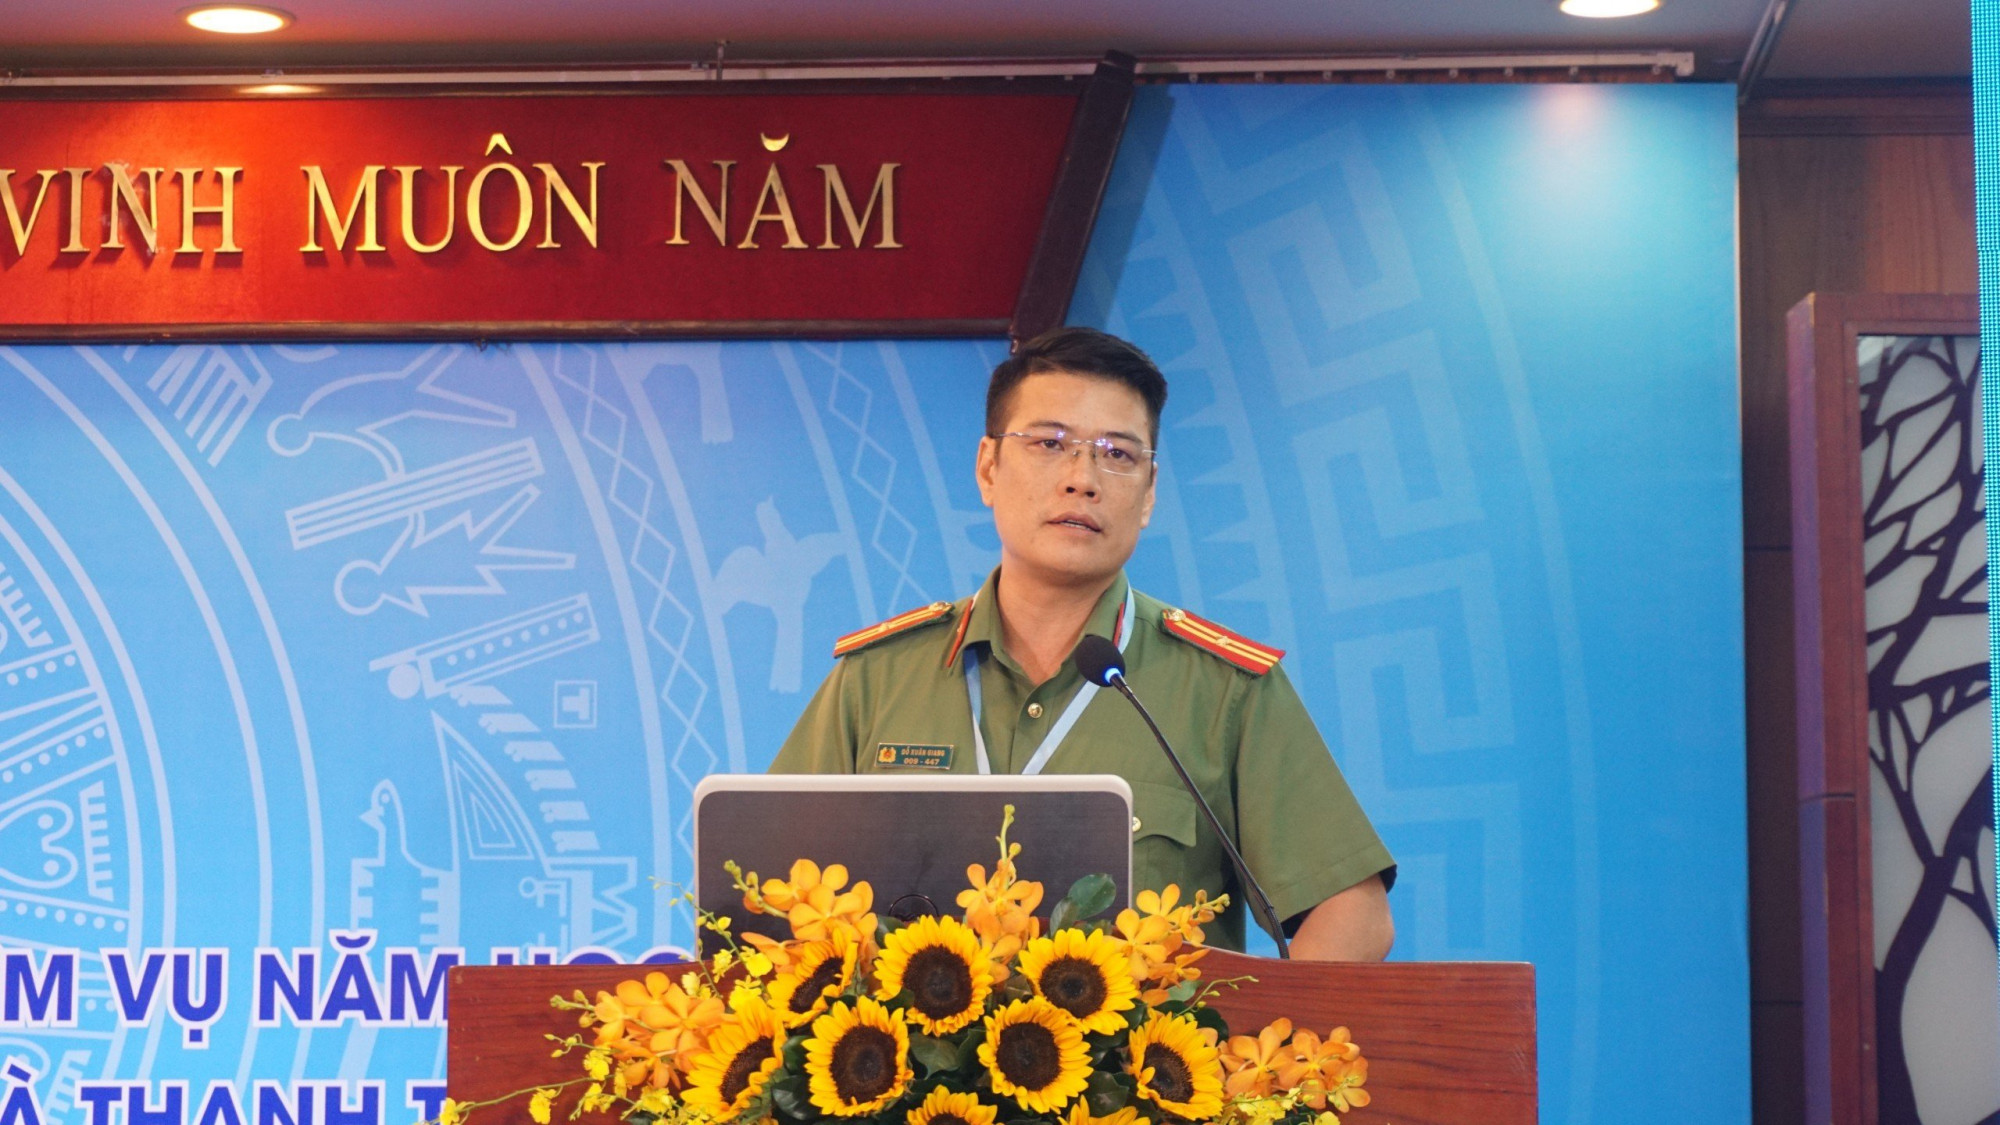 Đồng chí Đỗ Xuân Giang, cán bộ Cục An ninh chính trị nội bộ - Bộ công an (A03) phát biểu tại hội nghị. Ảnh: Anh Nhàn.